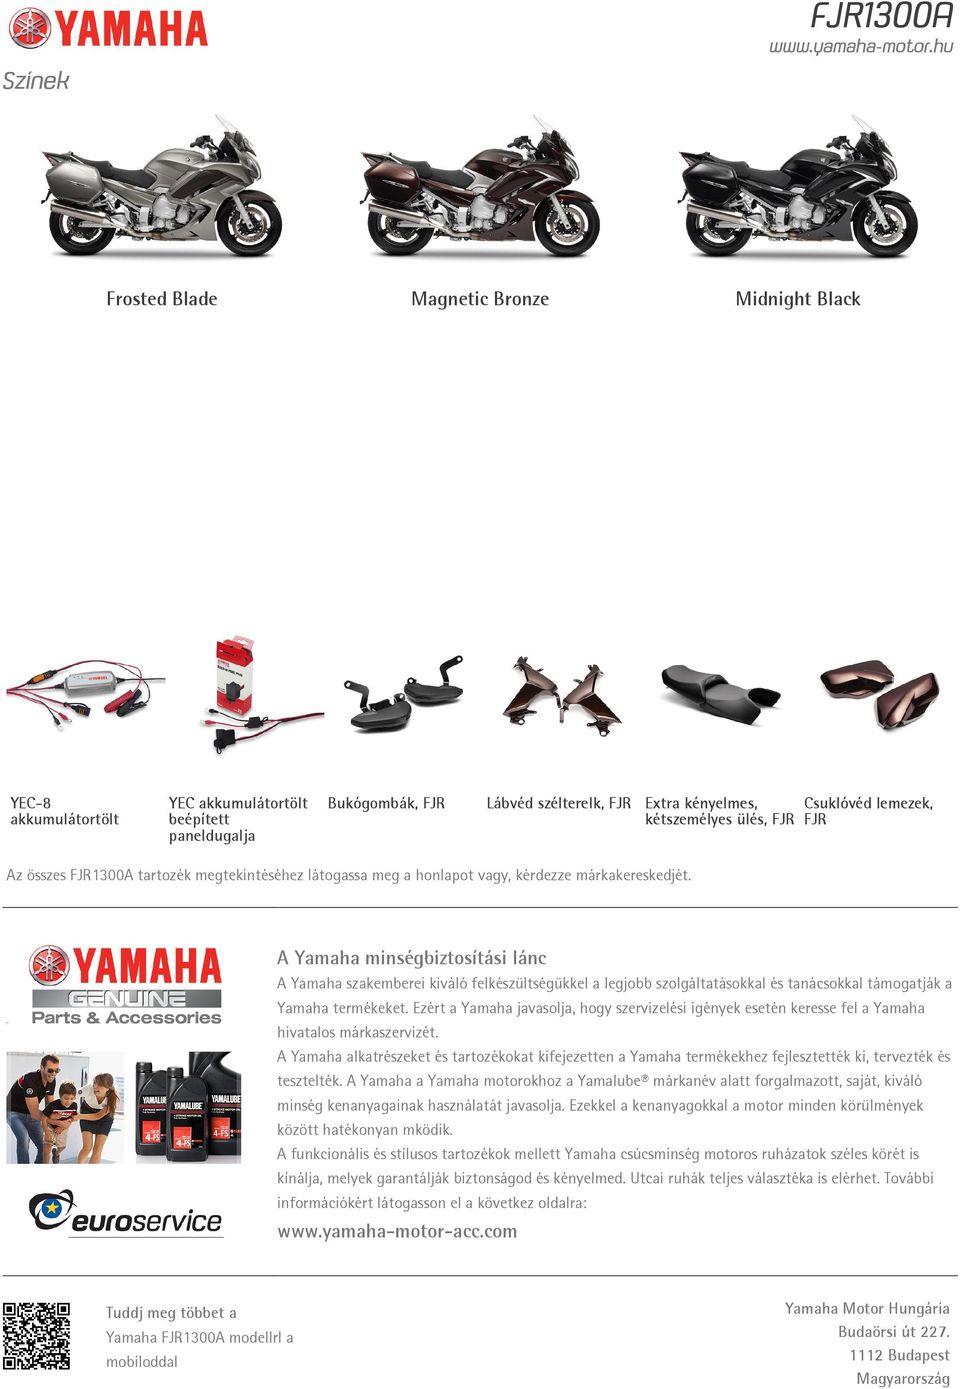 A Yamaha minségbiztosítási lánc A Yamaha szakemberei kiváló felkészültségükkel a legjobb szolgáltatásokkal és tanácsokkal támogatják a Yamaha termékeket.